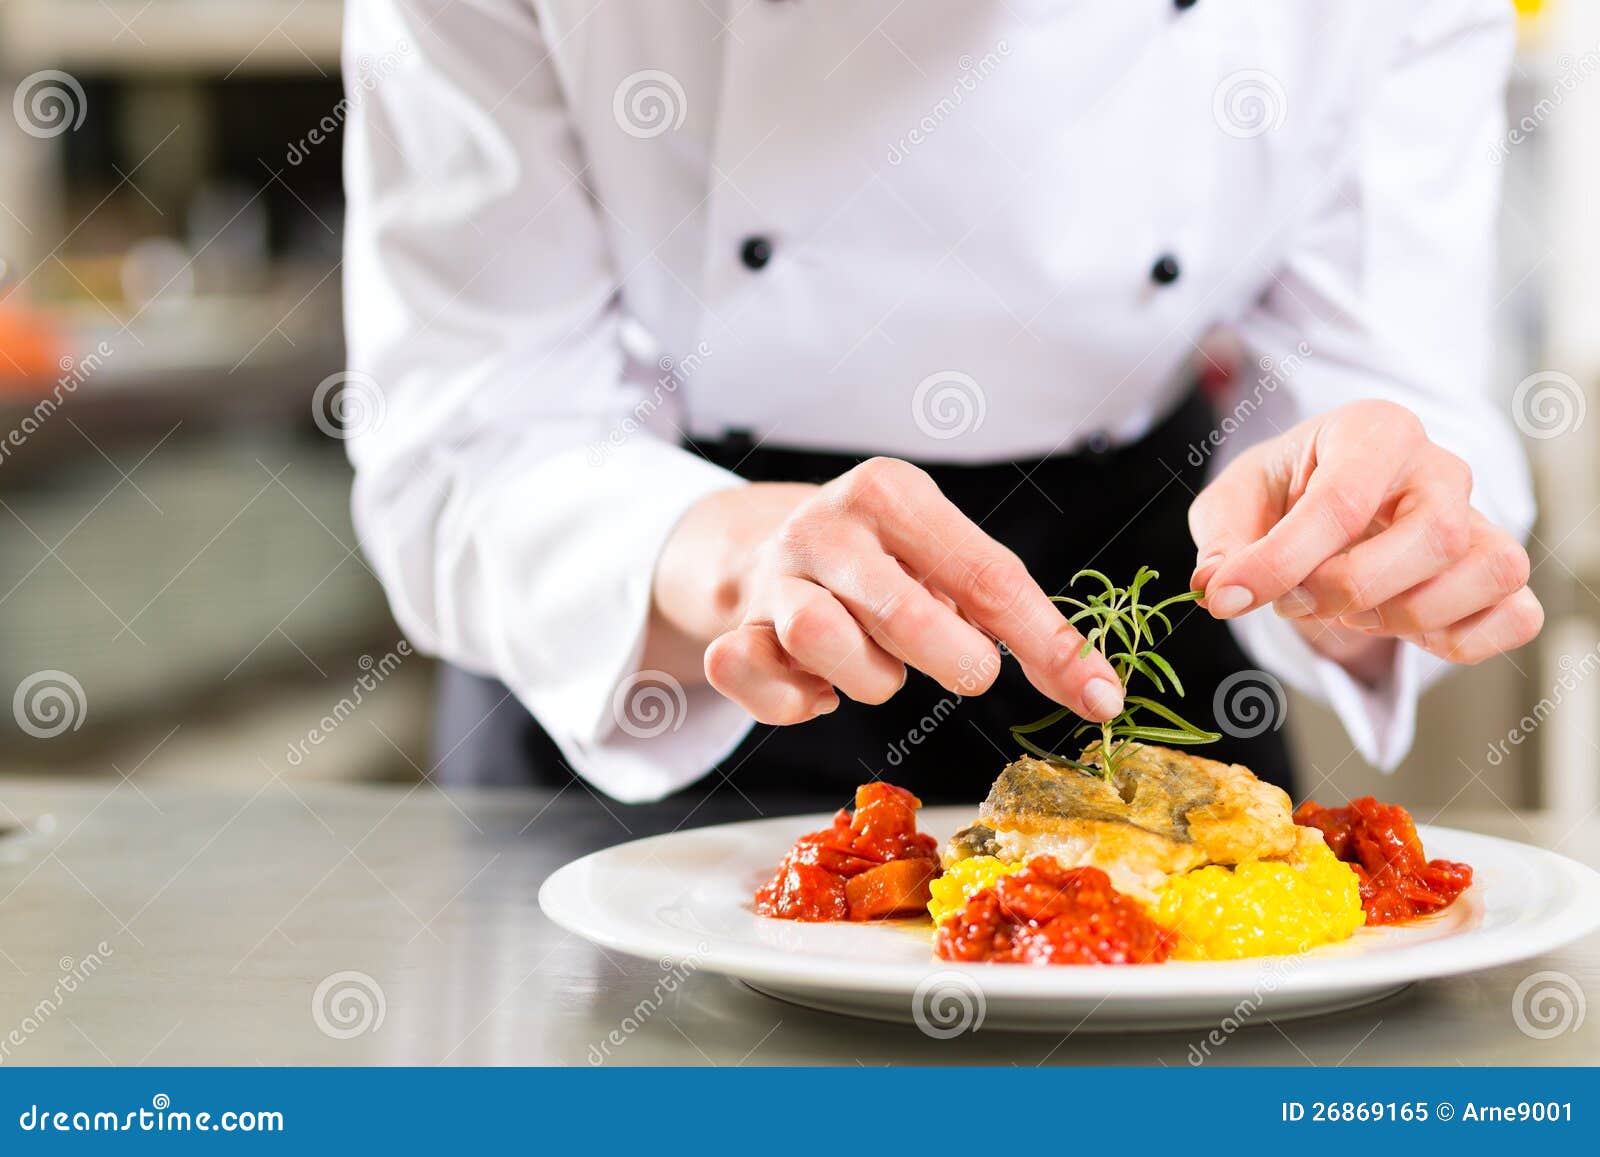 female chef in restaurant kitchen cooking